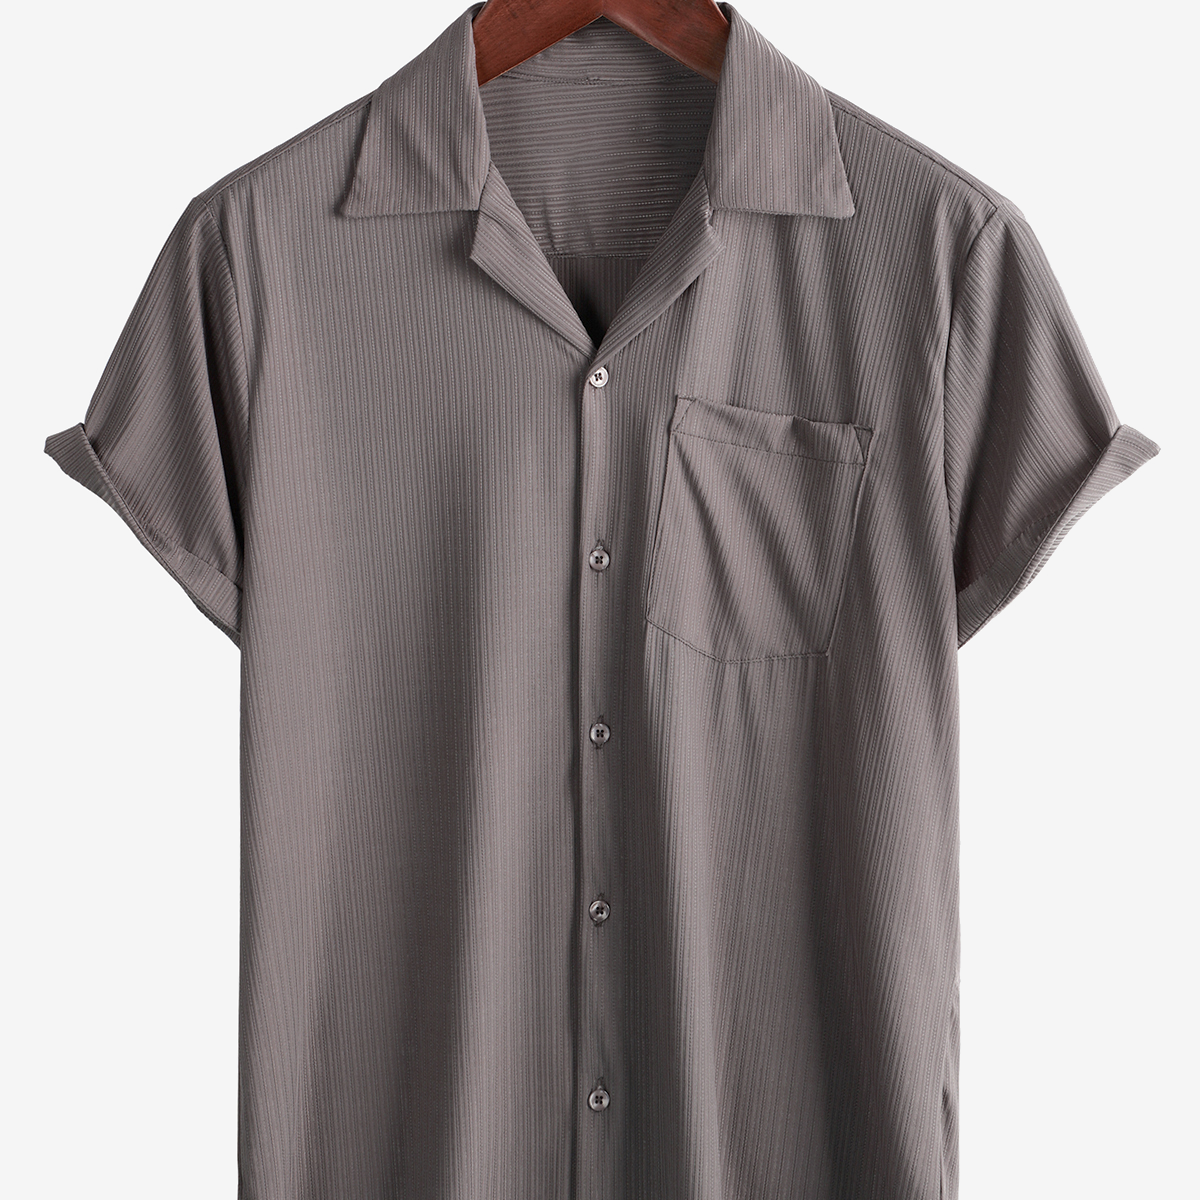 Men's Button Up Summer Short Sleeve Pocket Textured Beach Shirt